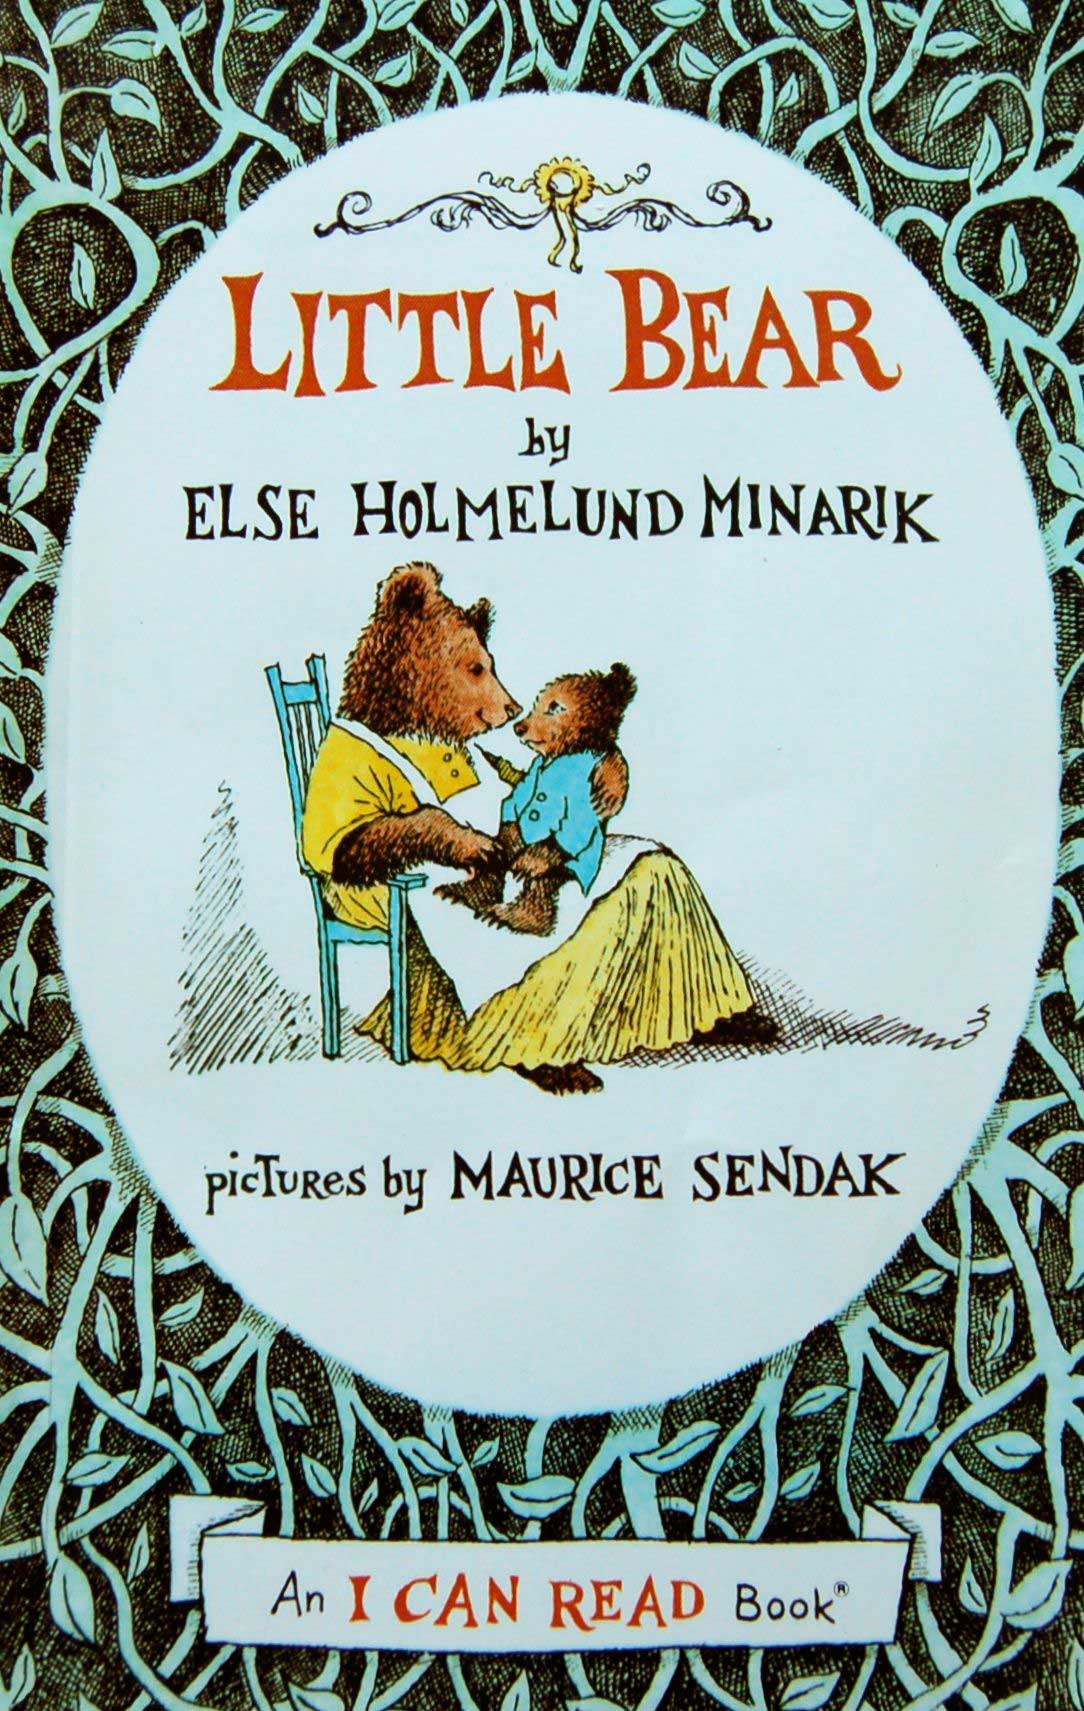 Best Children's Books: Little Bear